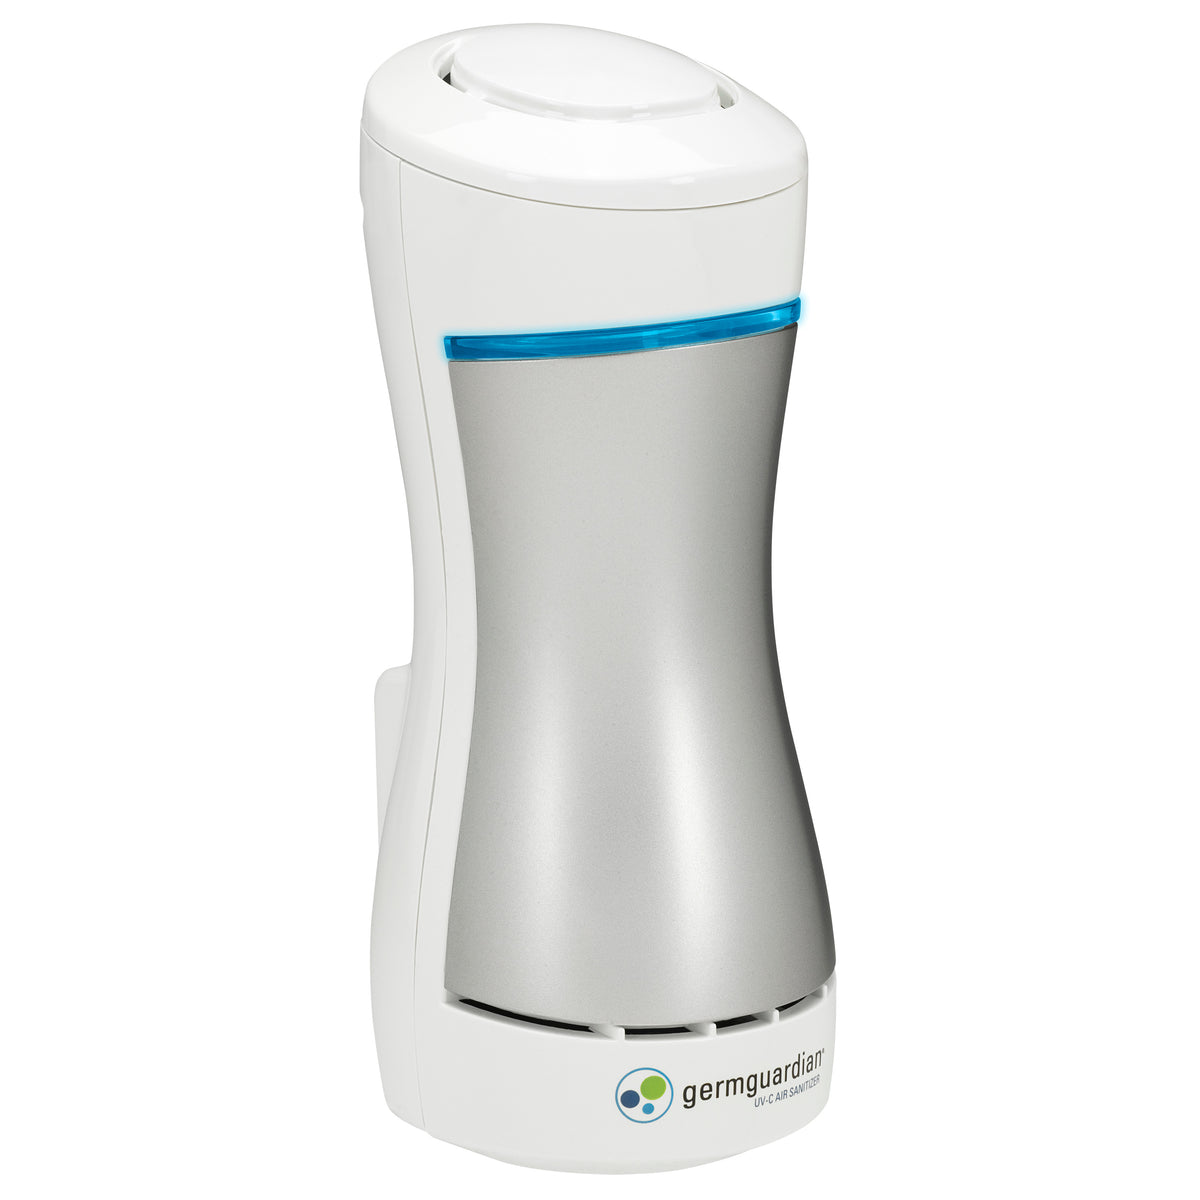 Germ Guardian Pluggable Air Purifier & Sanitizer